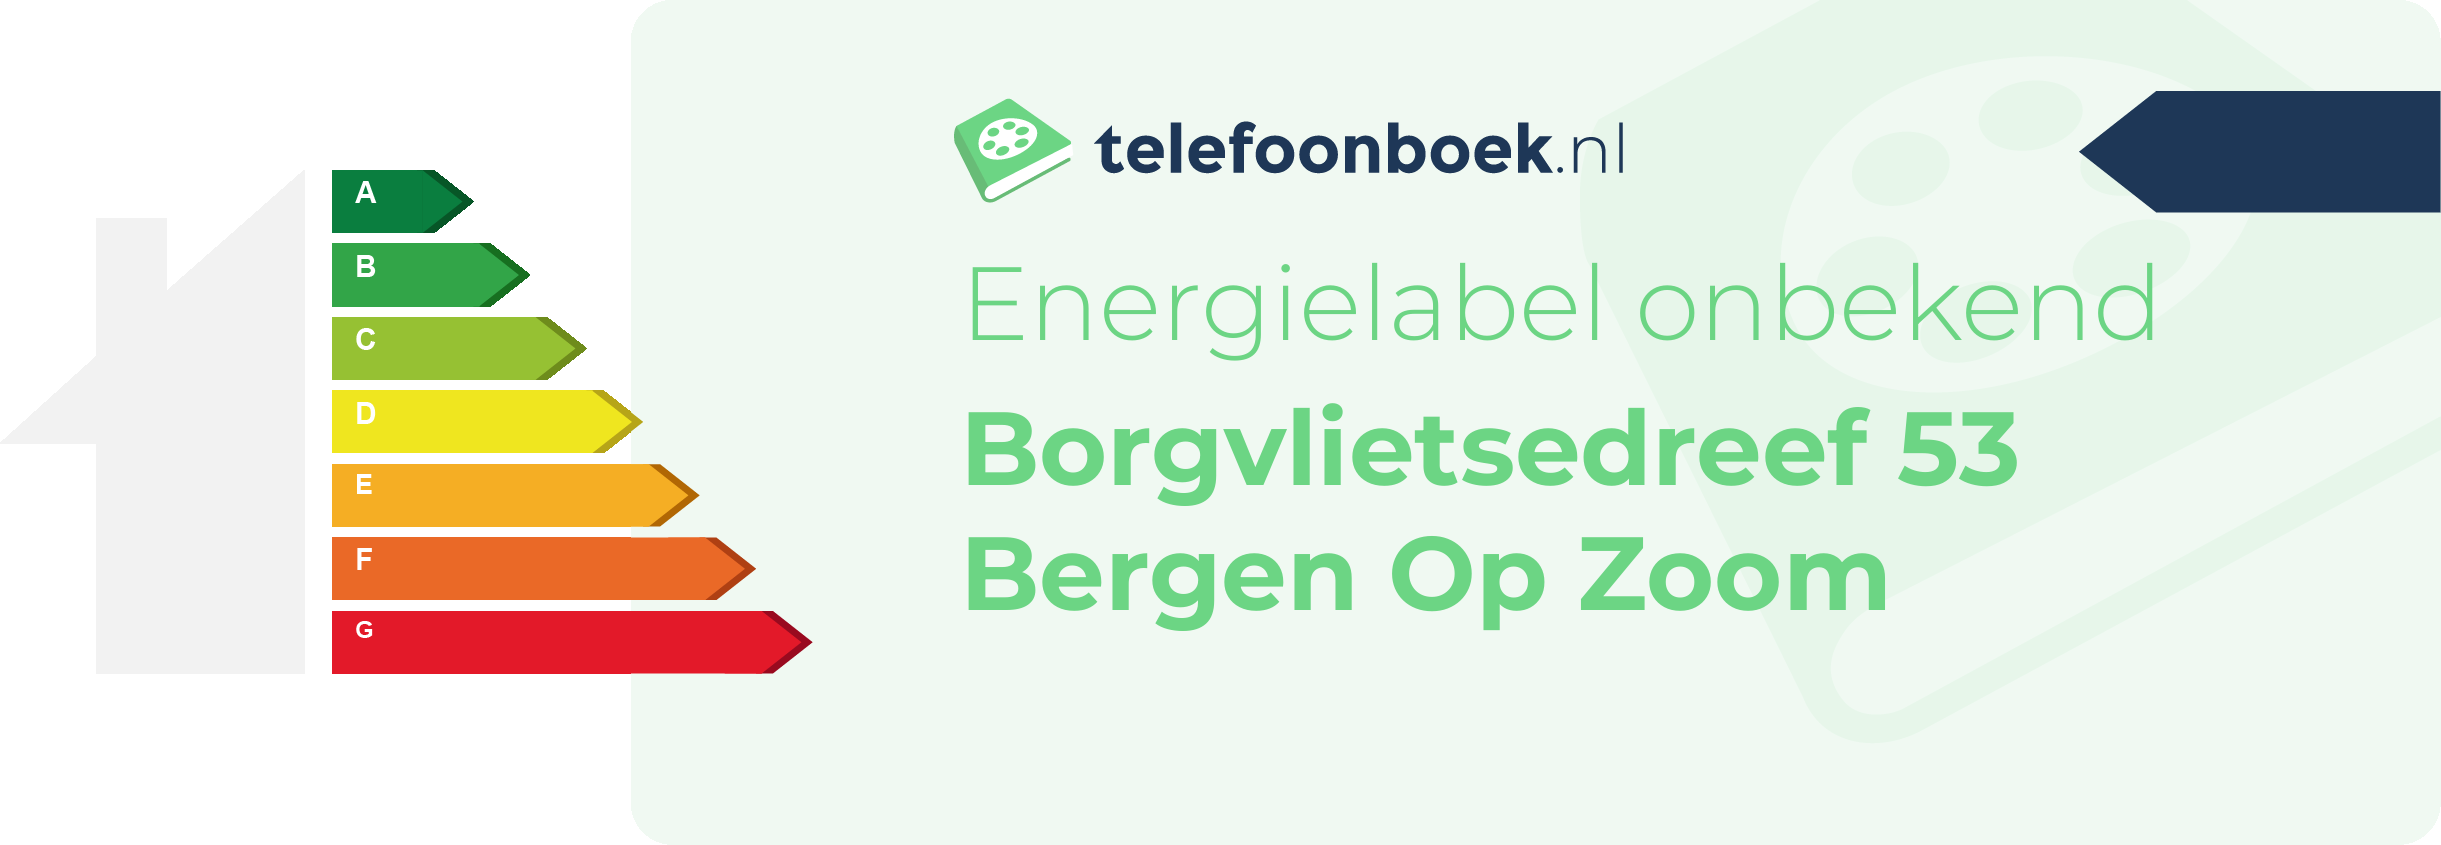 Energielabel Borgvlietsedreef 53 Bergen Op Zoom